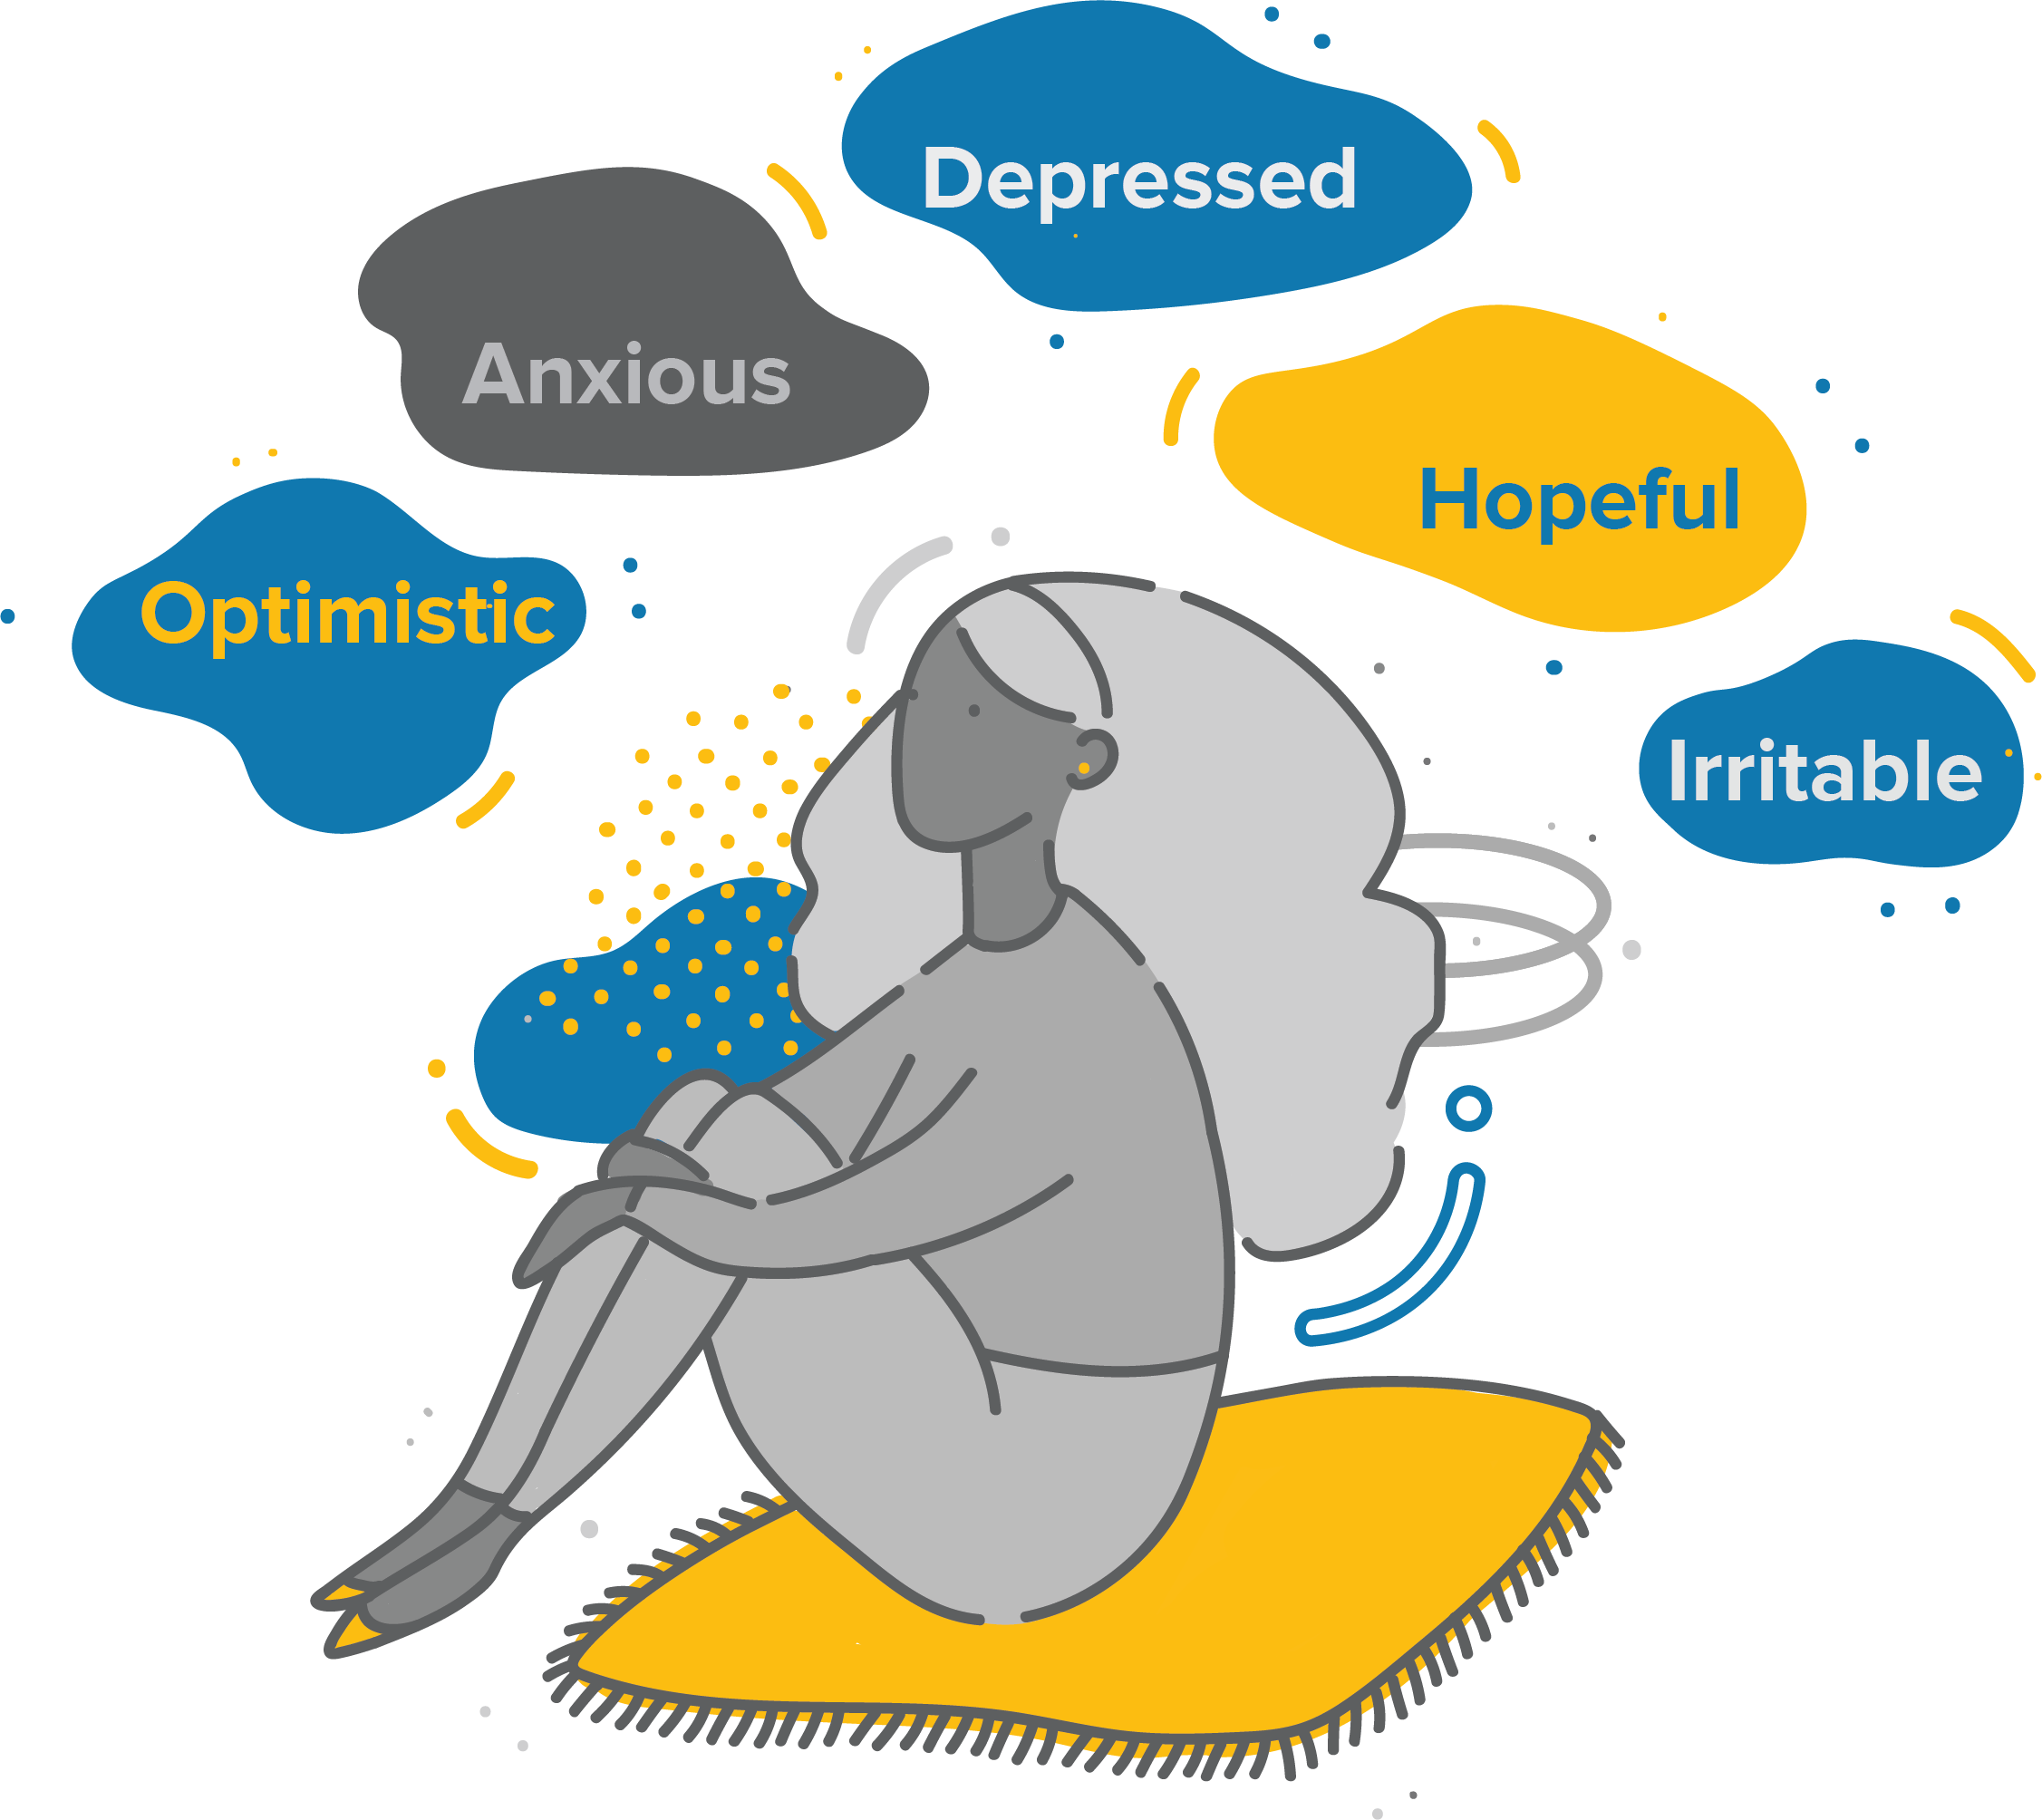 Symptoms area emotion bubbles